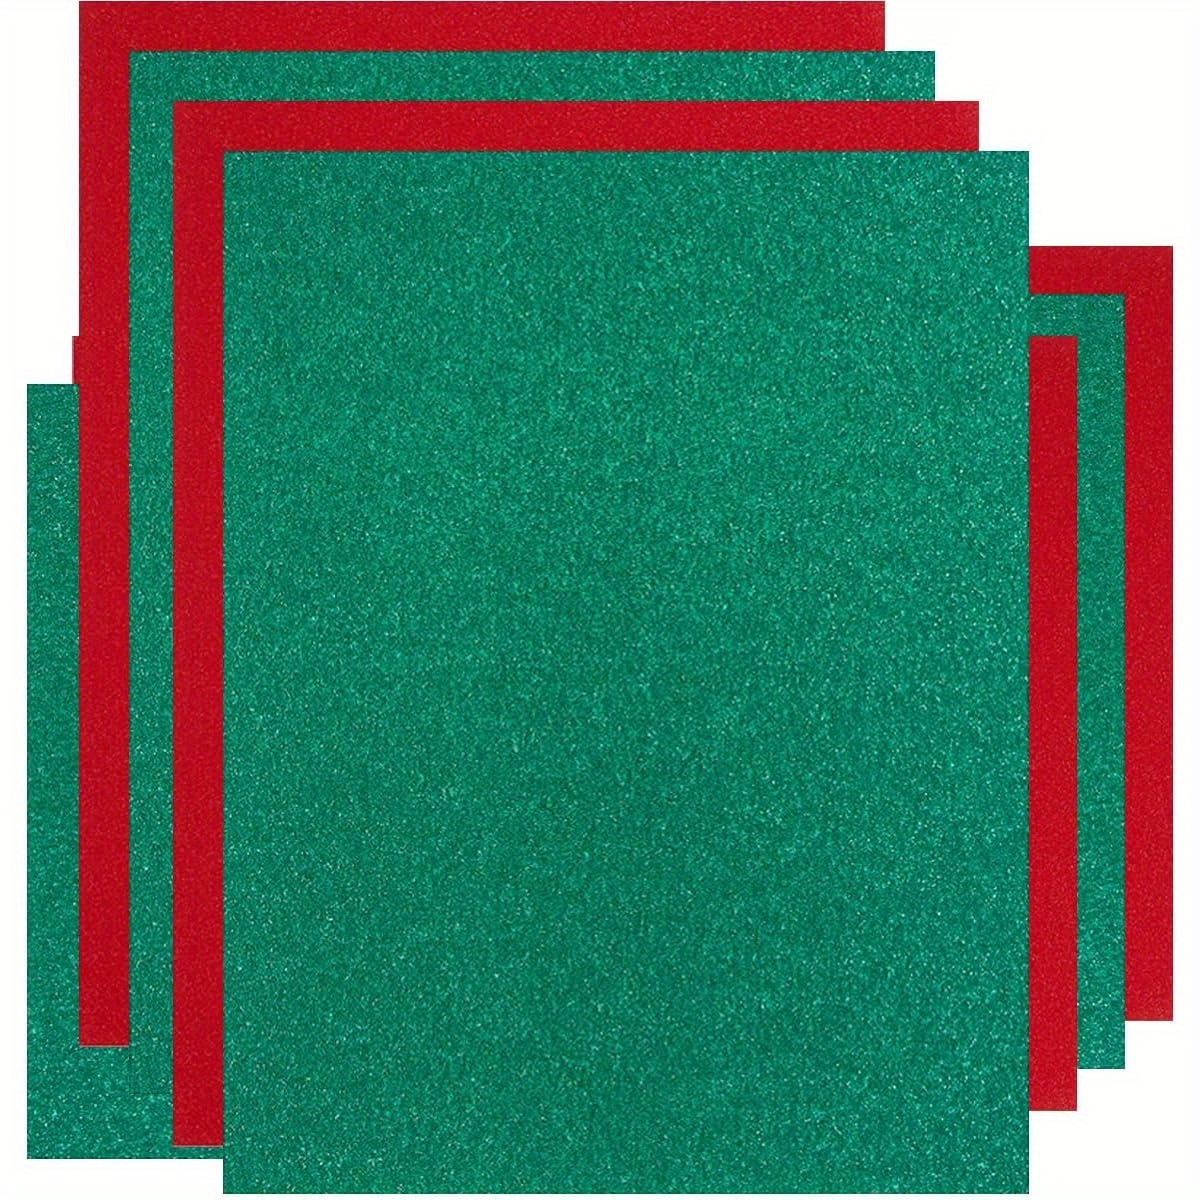 Papel de cartulina negra, 20 hojas de 8.82 oz/m² de grosor, papel de  cartulina negra para tarjetas de arte de bricolaje, papel de cartulina  negra de